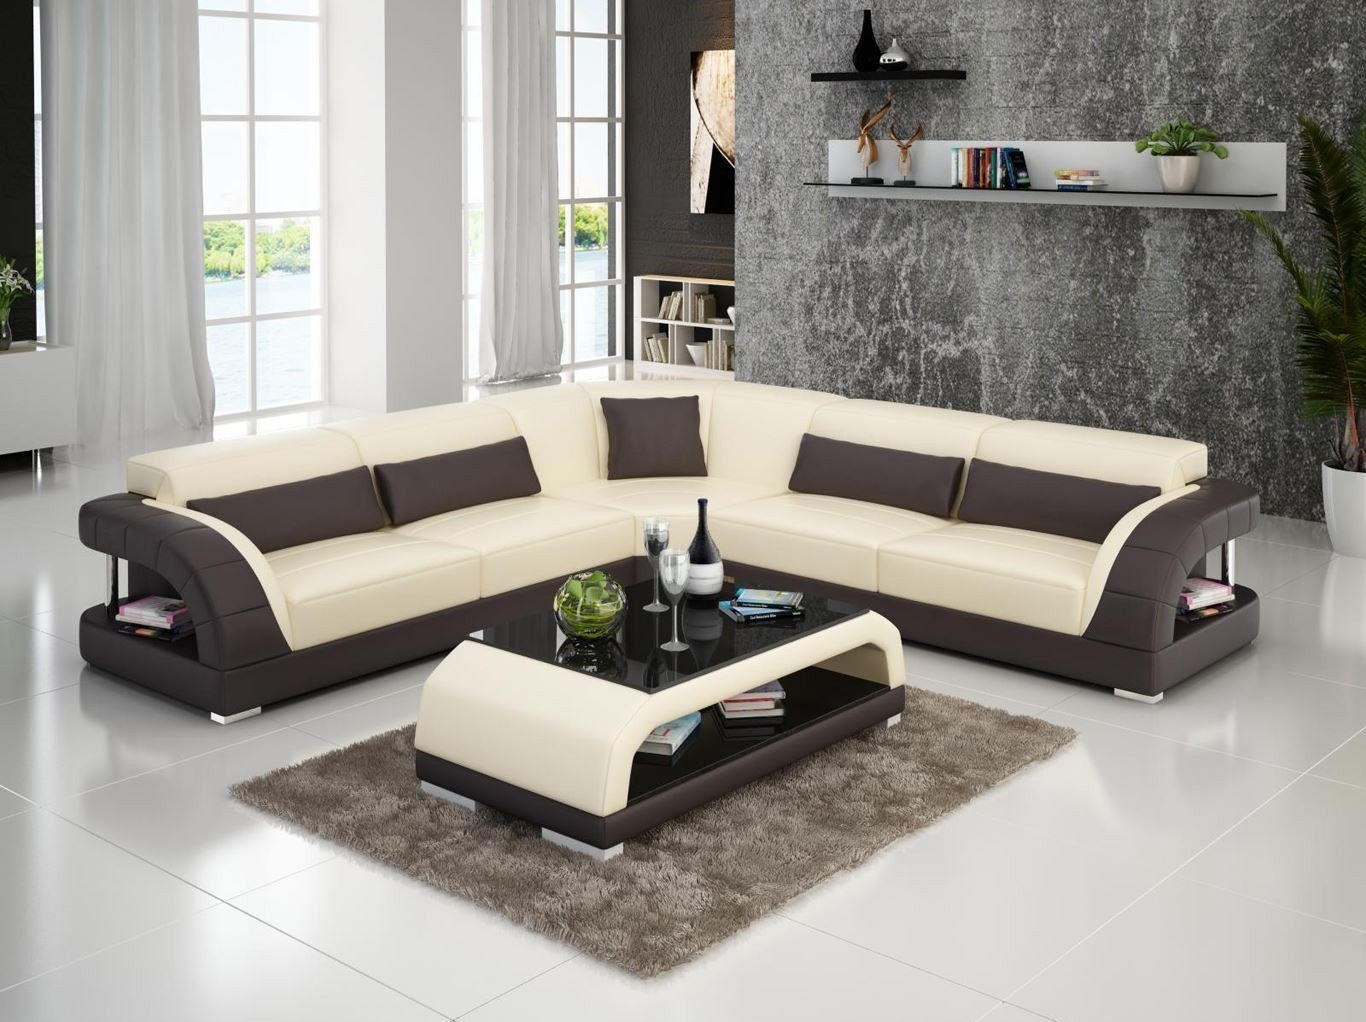 JVmoebel Ecksofa Couch Ecksofa Leder Wohnlandschaft Garnitur Design Modern, Made in Europe Beige/Braun